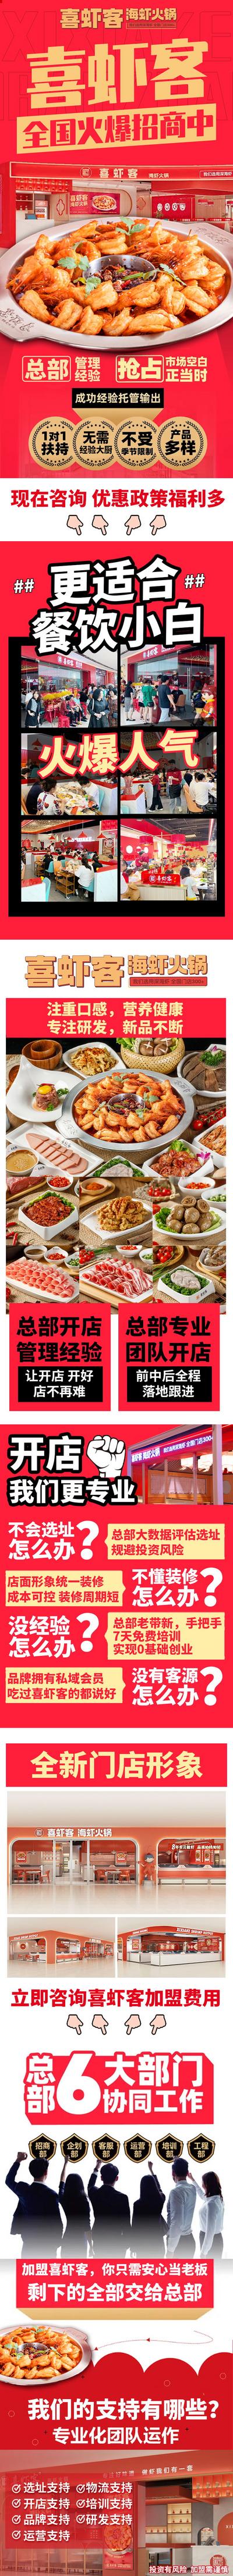 南门网 广告 长图 餐饮 美食 专题设计 虾 火锅 招商 加盟 合伙人 市场